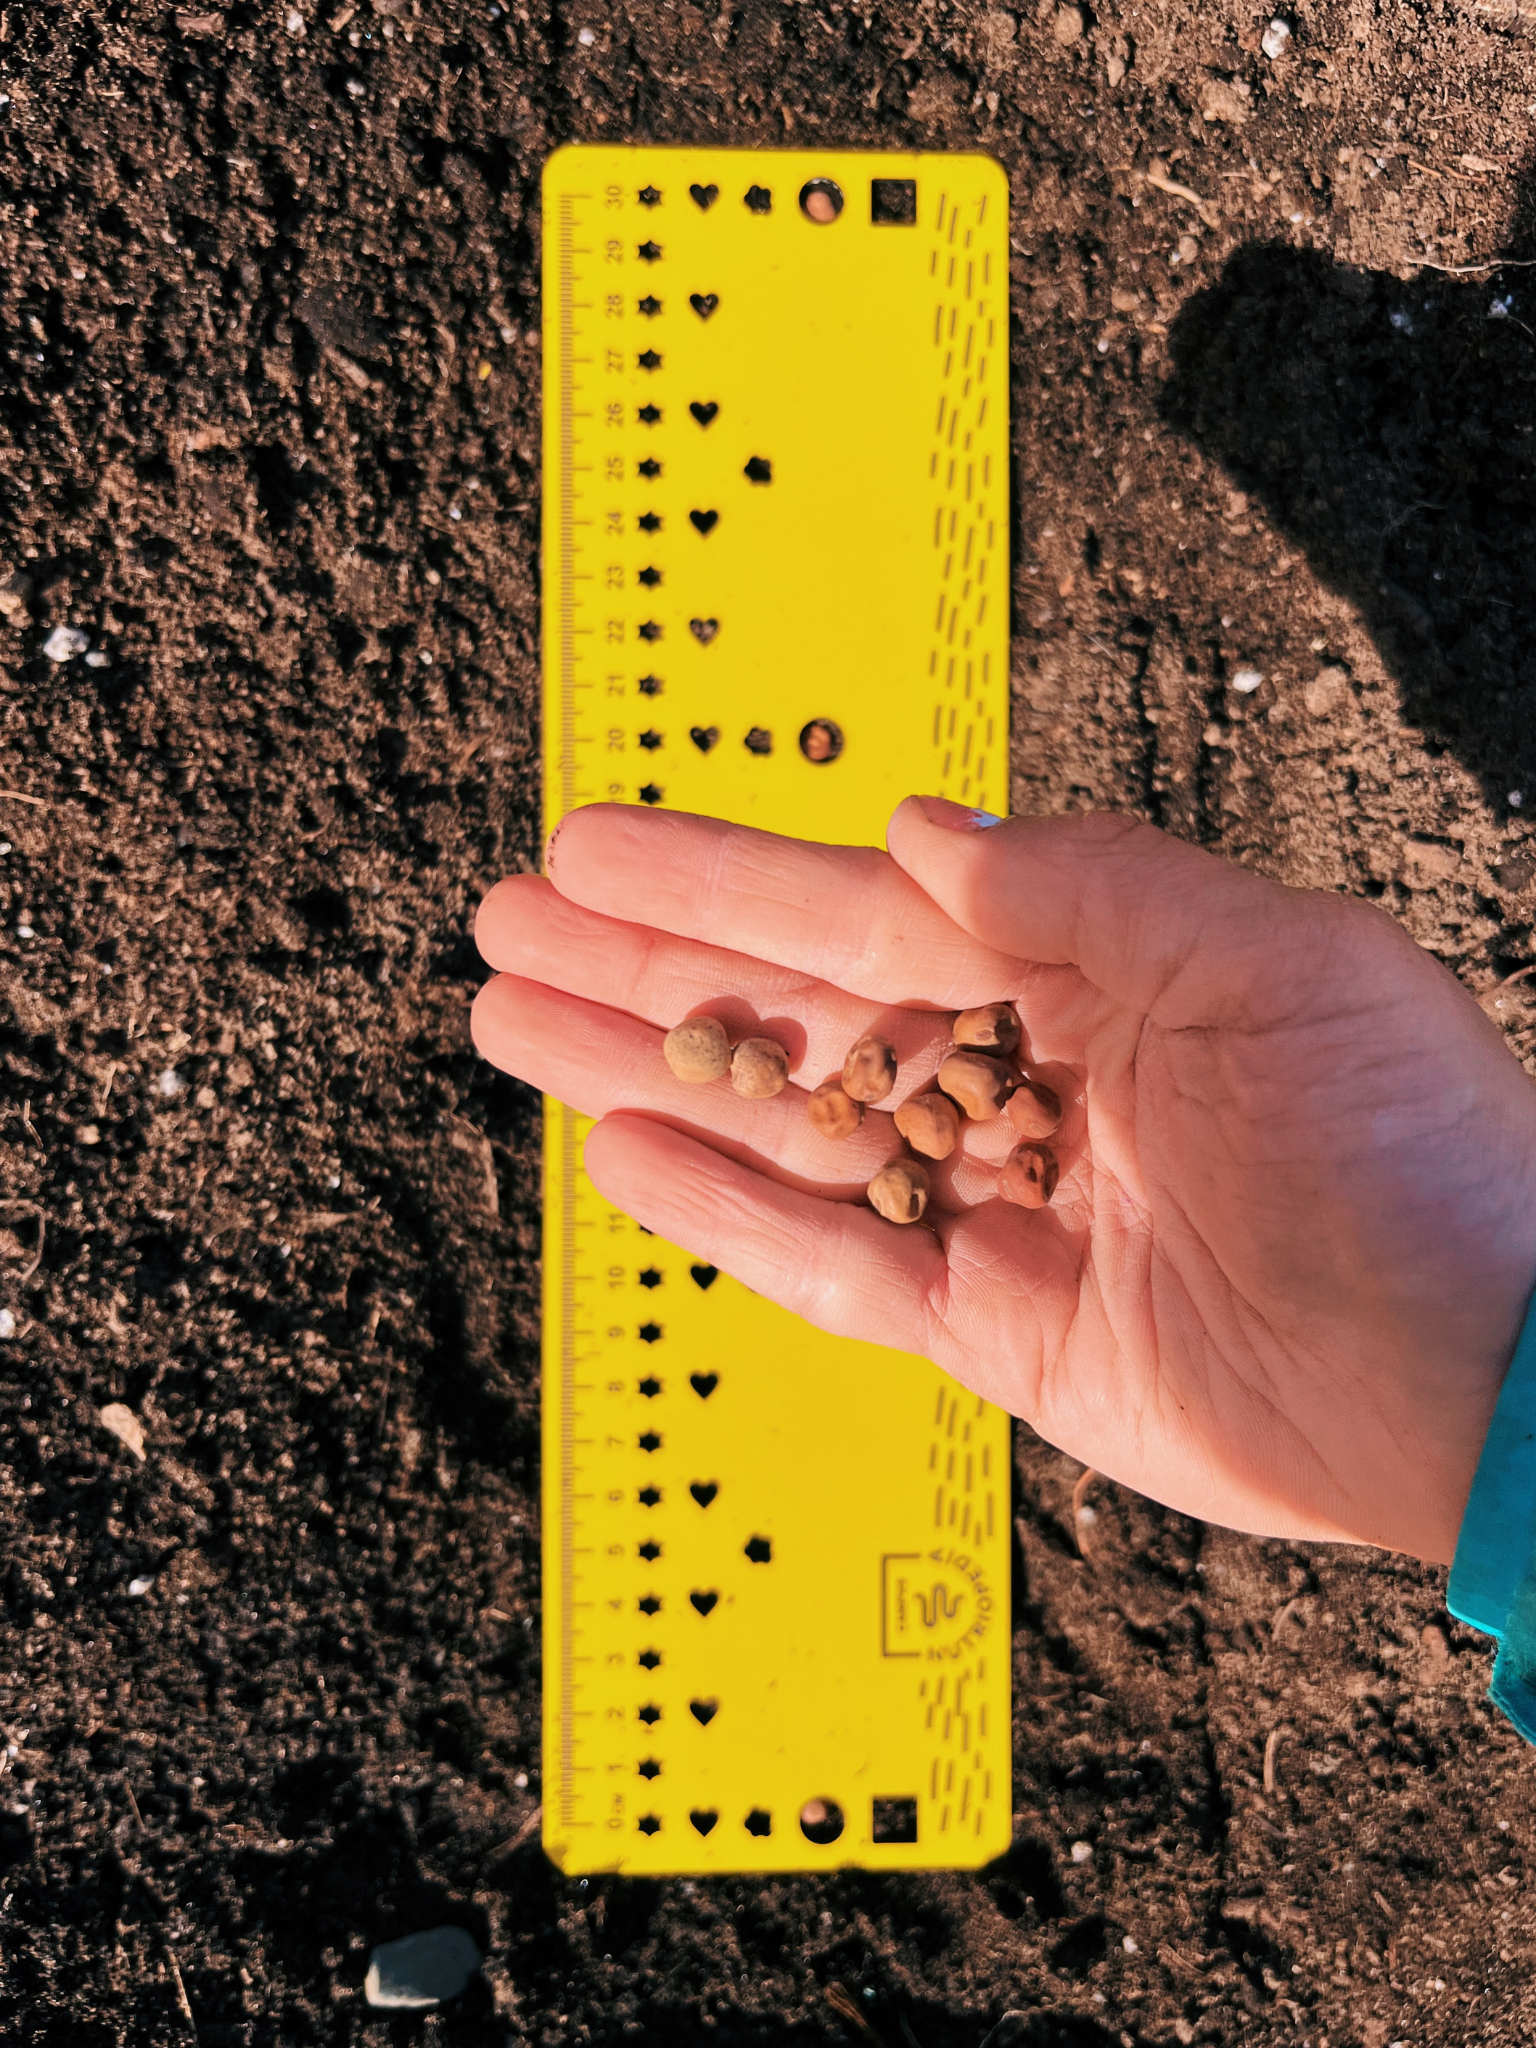 Règle à semer - gabarit pour semis en ligne, fabriqué au Québec